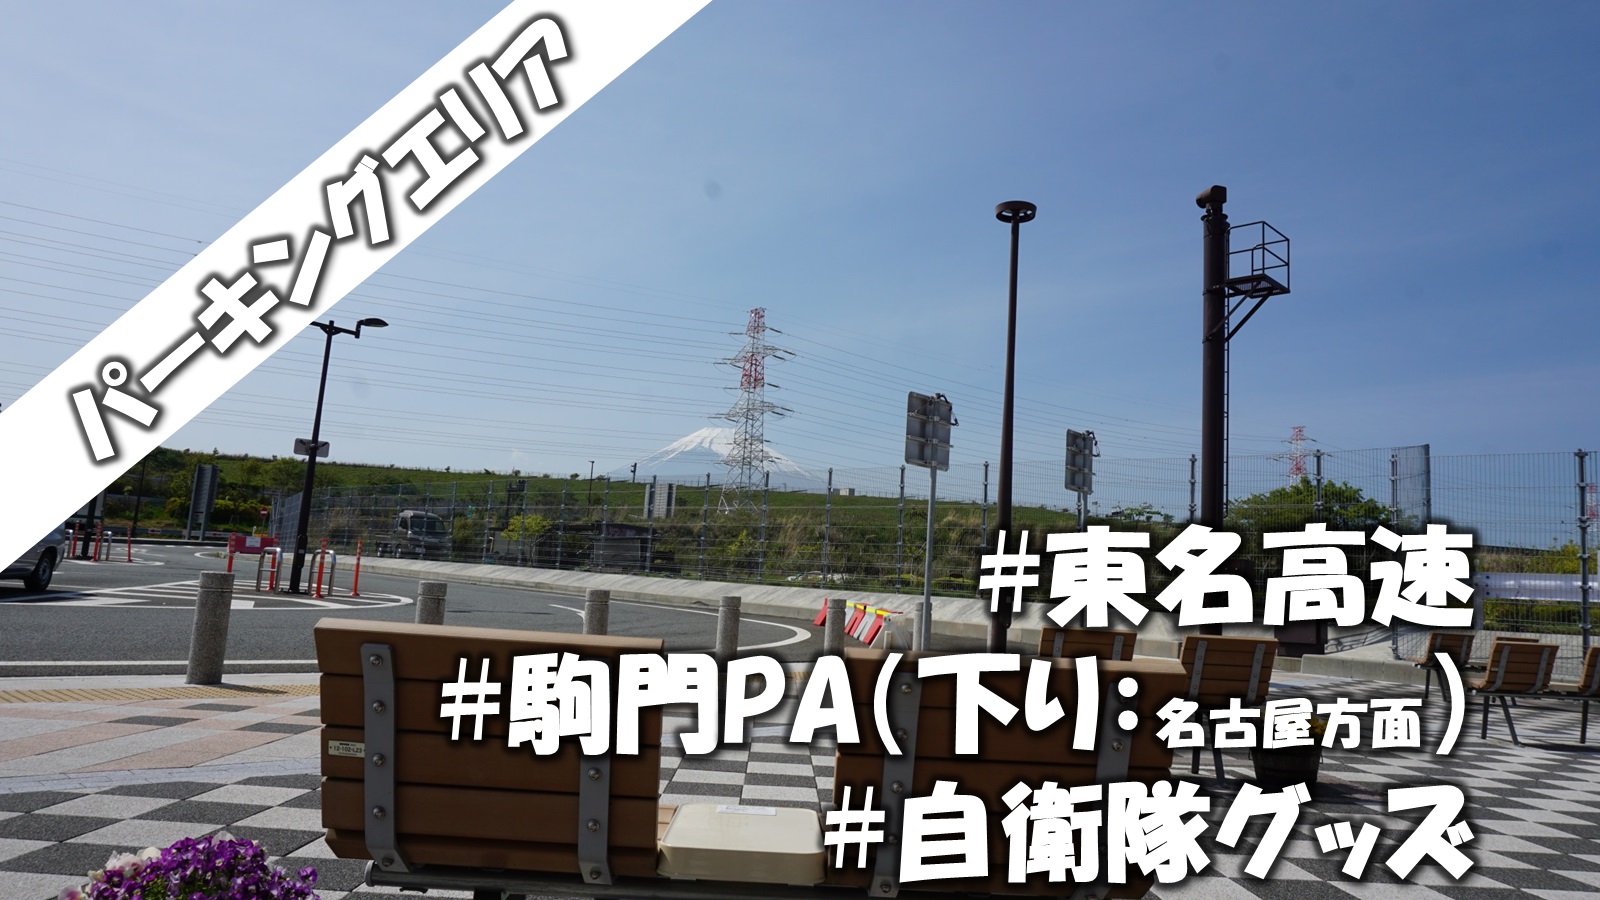 高速道路で水場がある車中泊スポット 東名高速 駒門pa 下り 名古屋方面 道の駅 ブログ